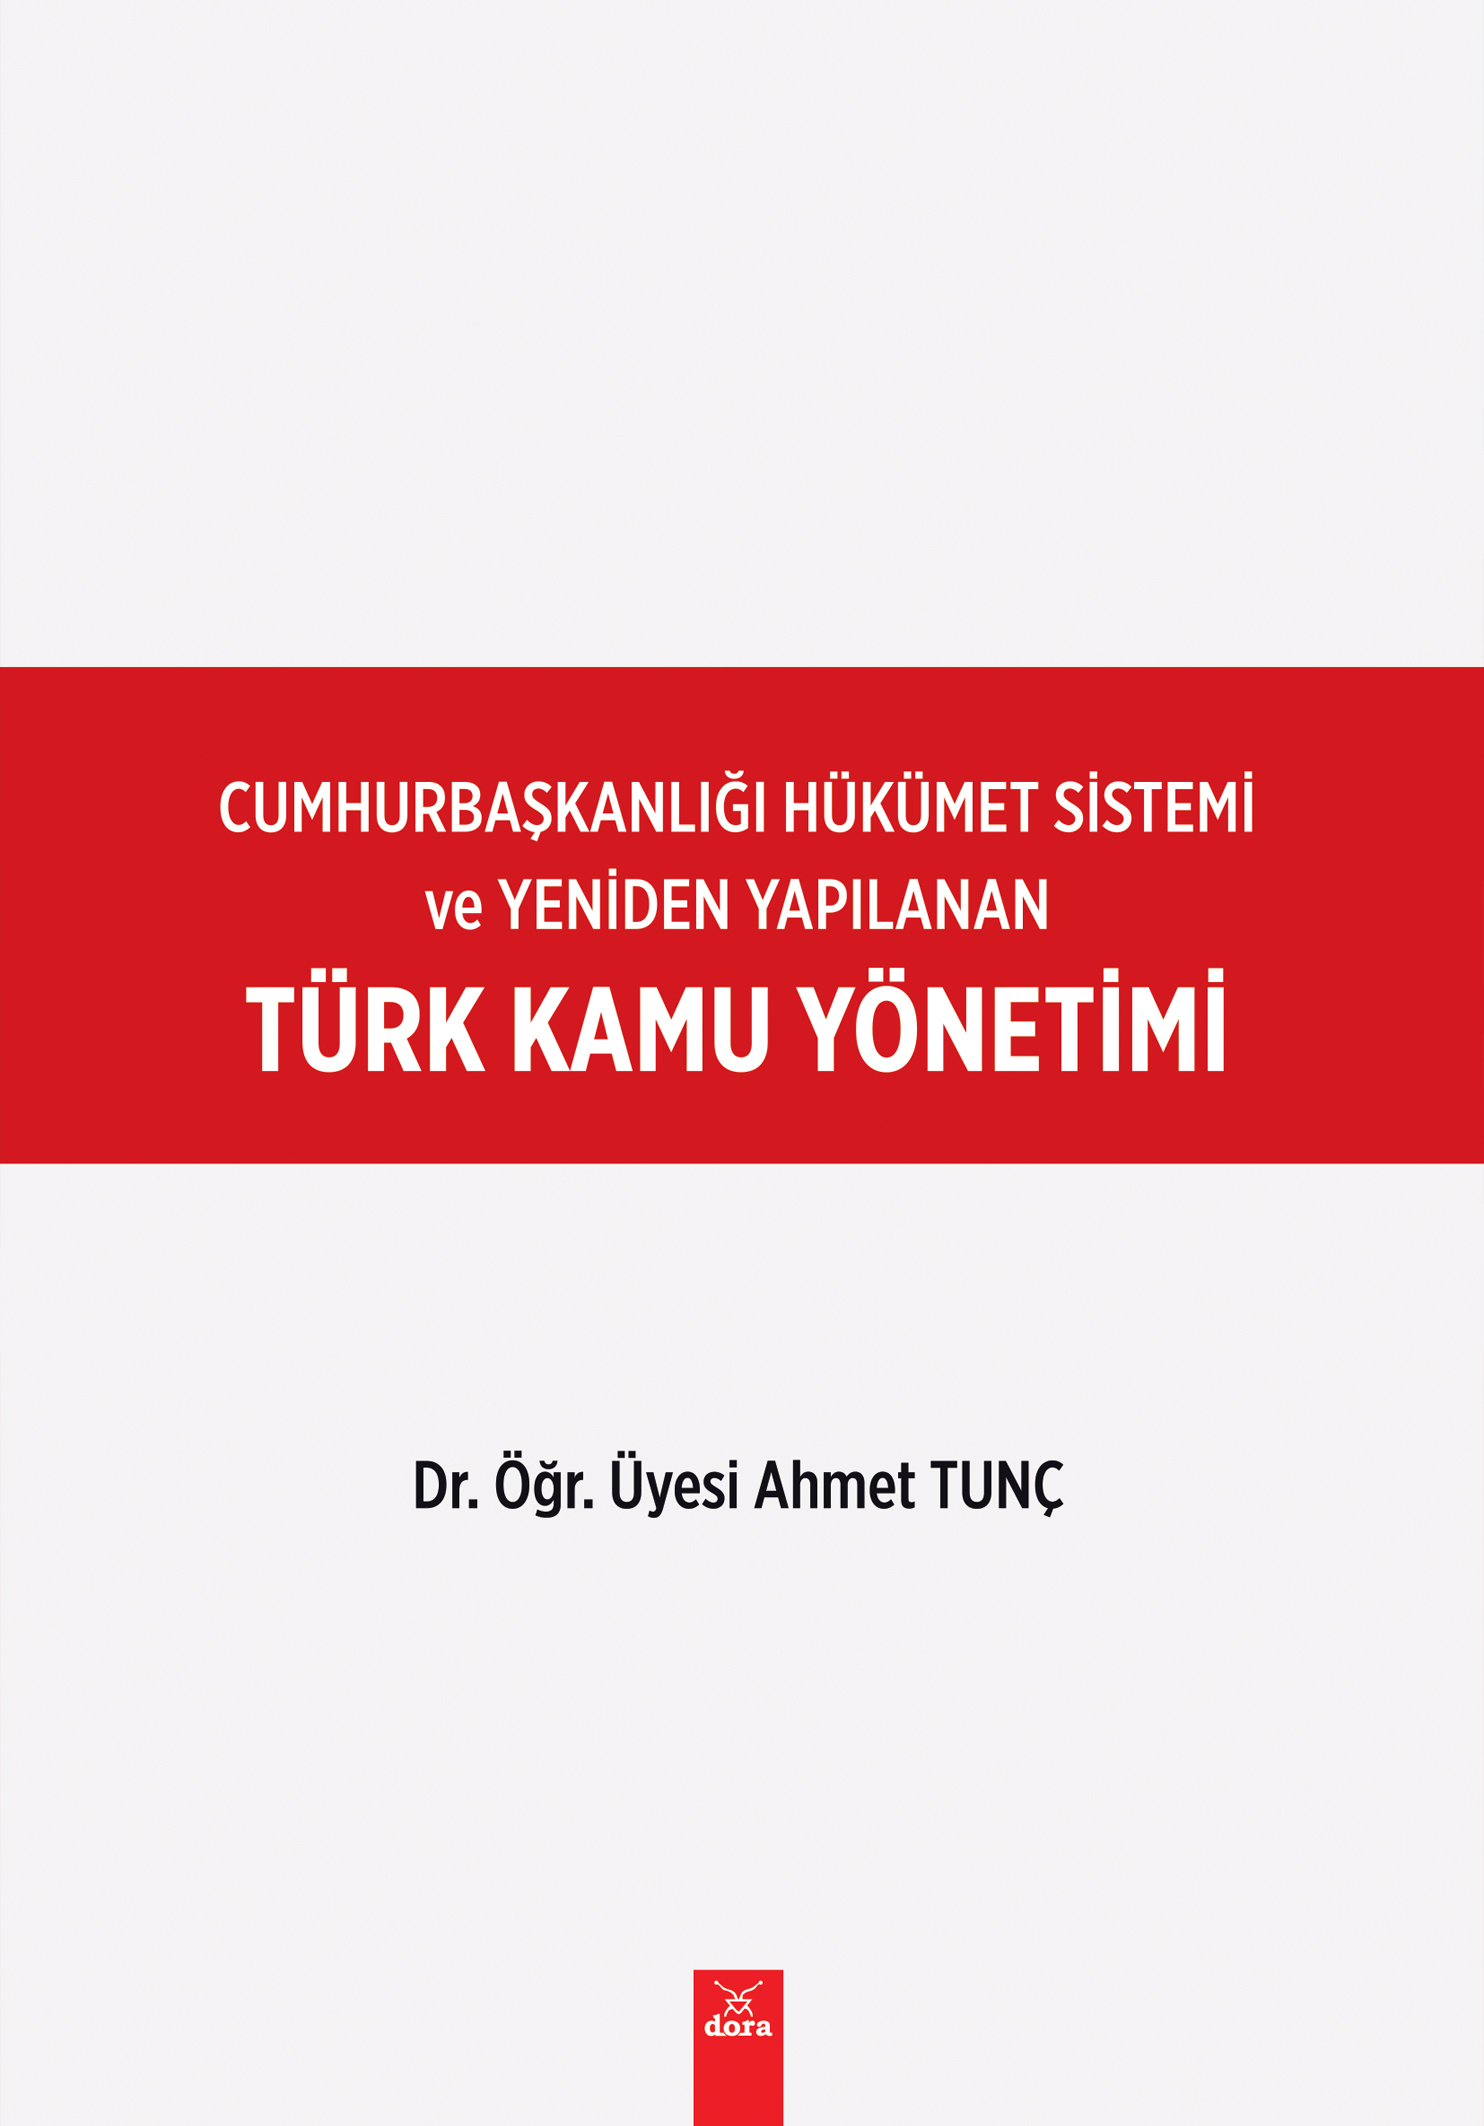 Türk Kamu Yönetimi –Cumhurbaşkanlığı  Hükümet  Sistemi | 476 | Dora Yayıncılık